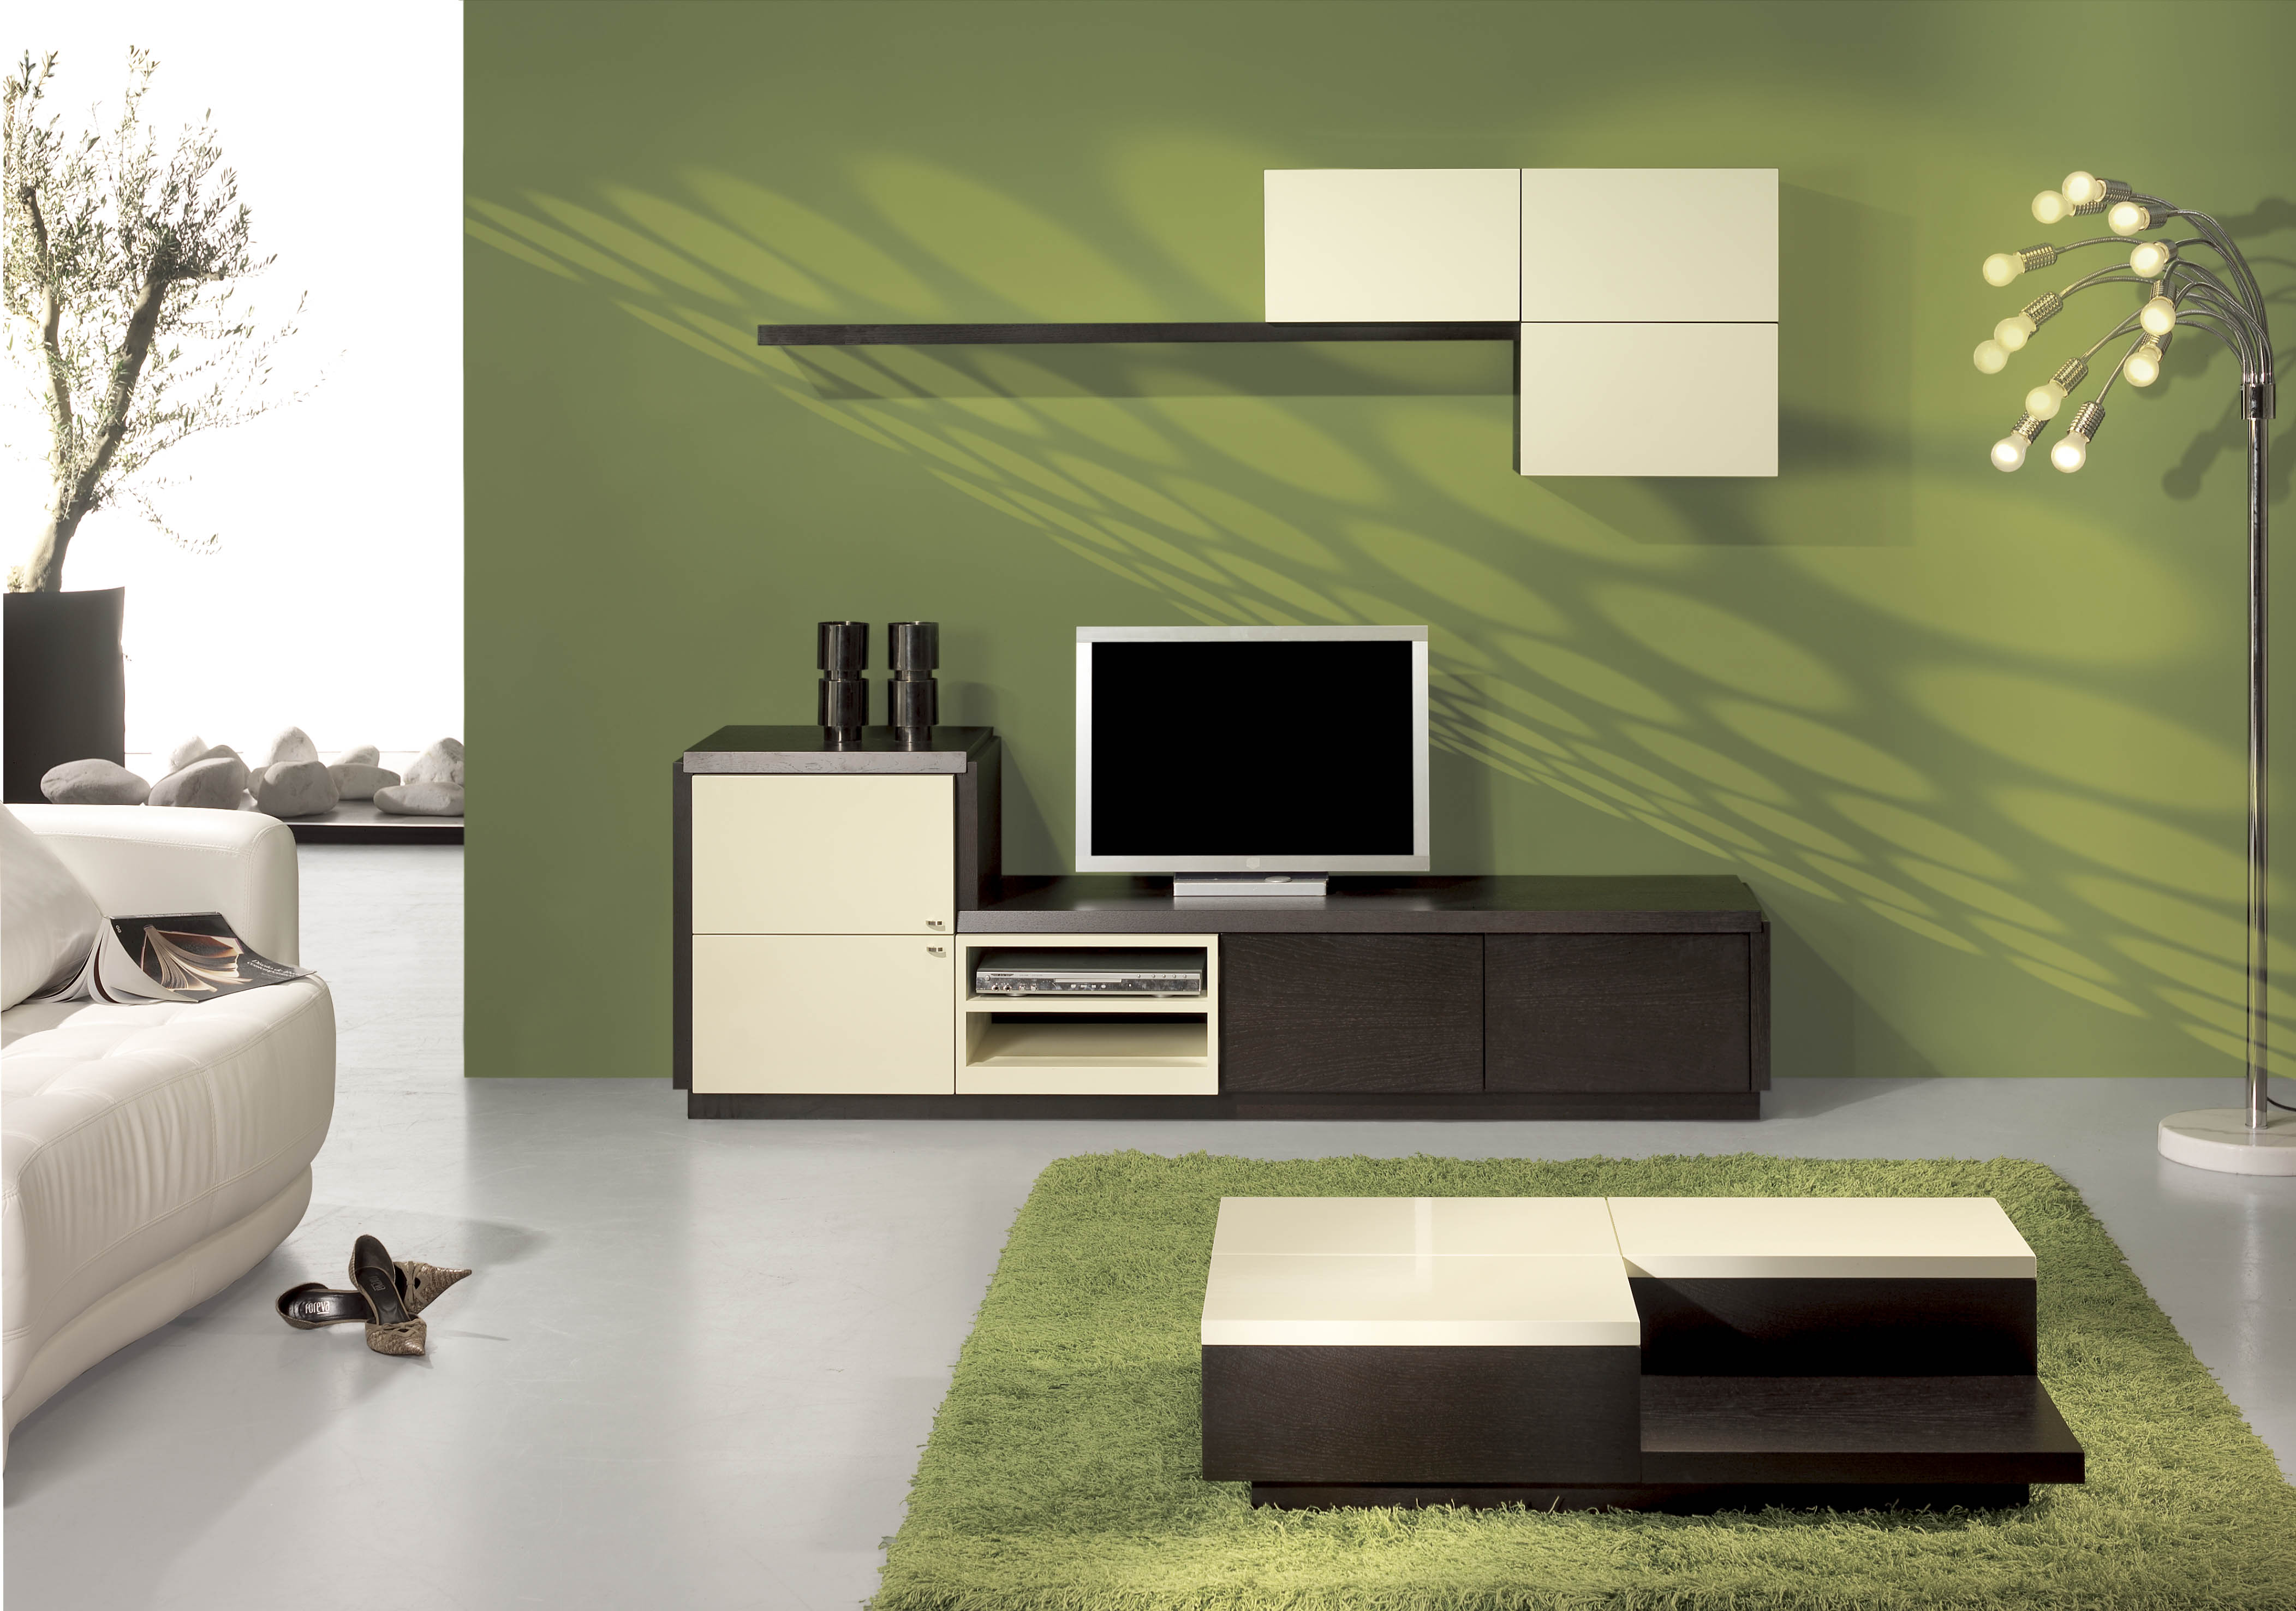  цветов мебели в интерьере » Современный дизайн на Vip-1gl